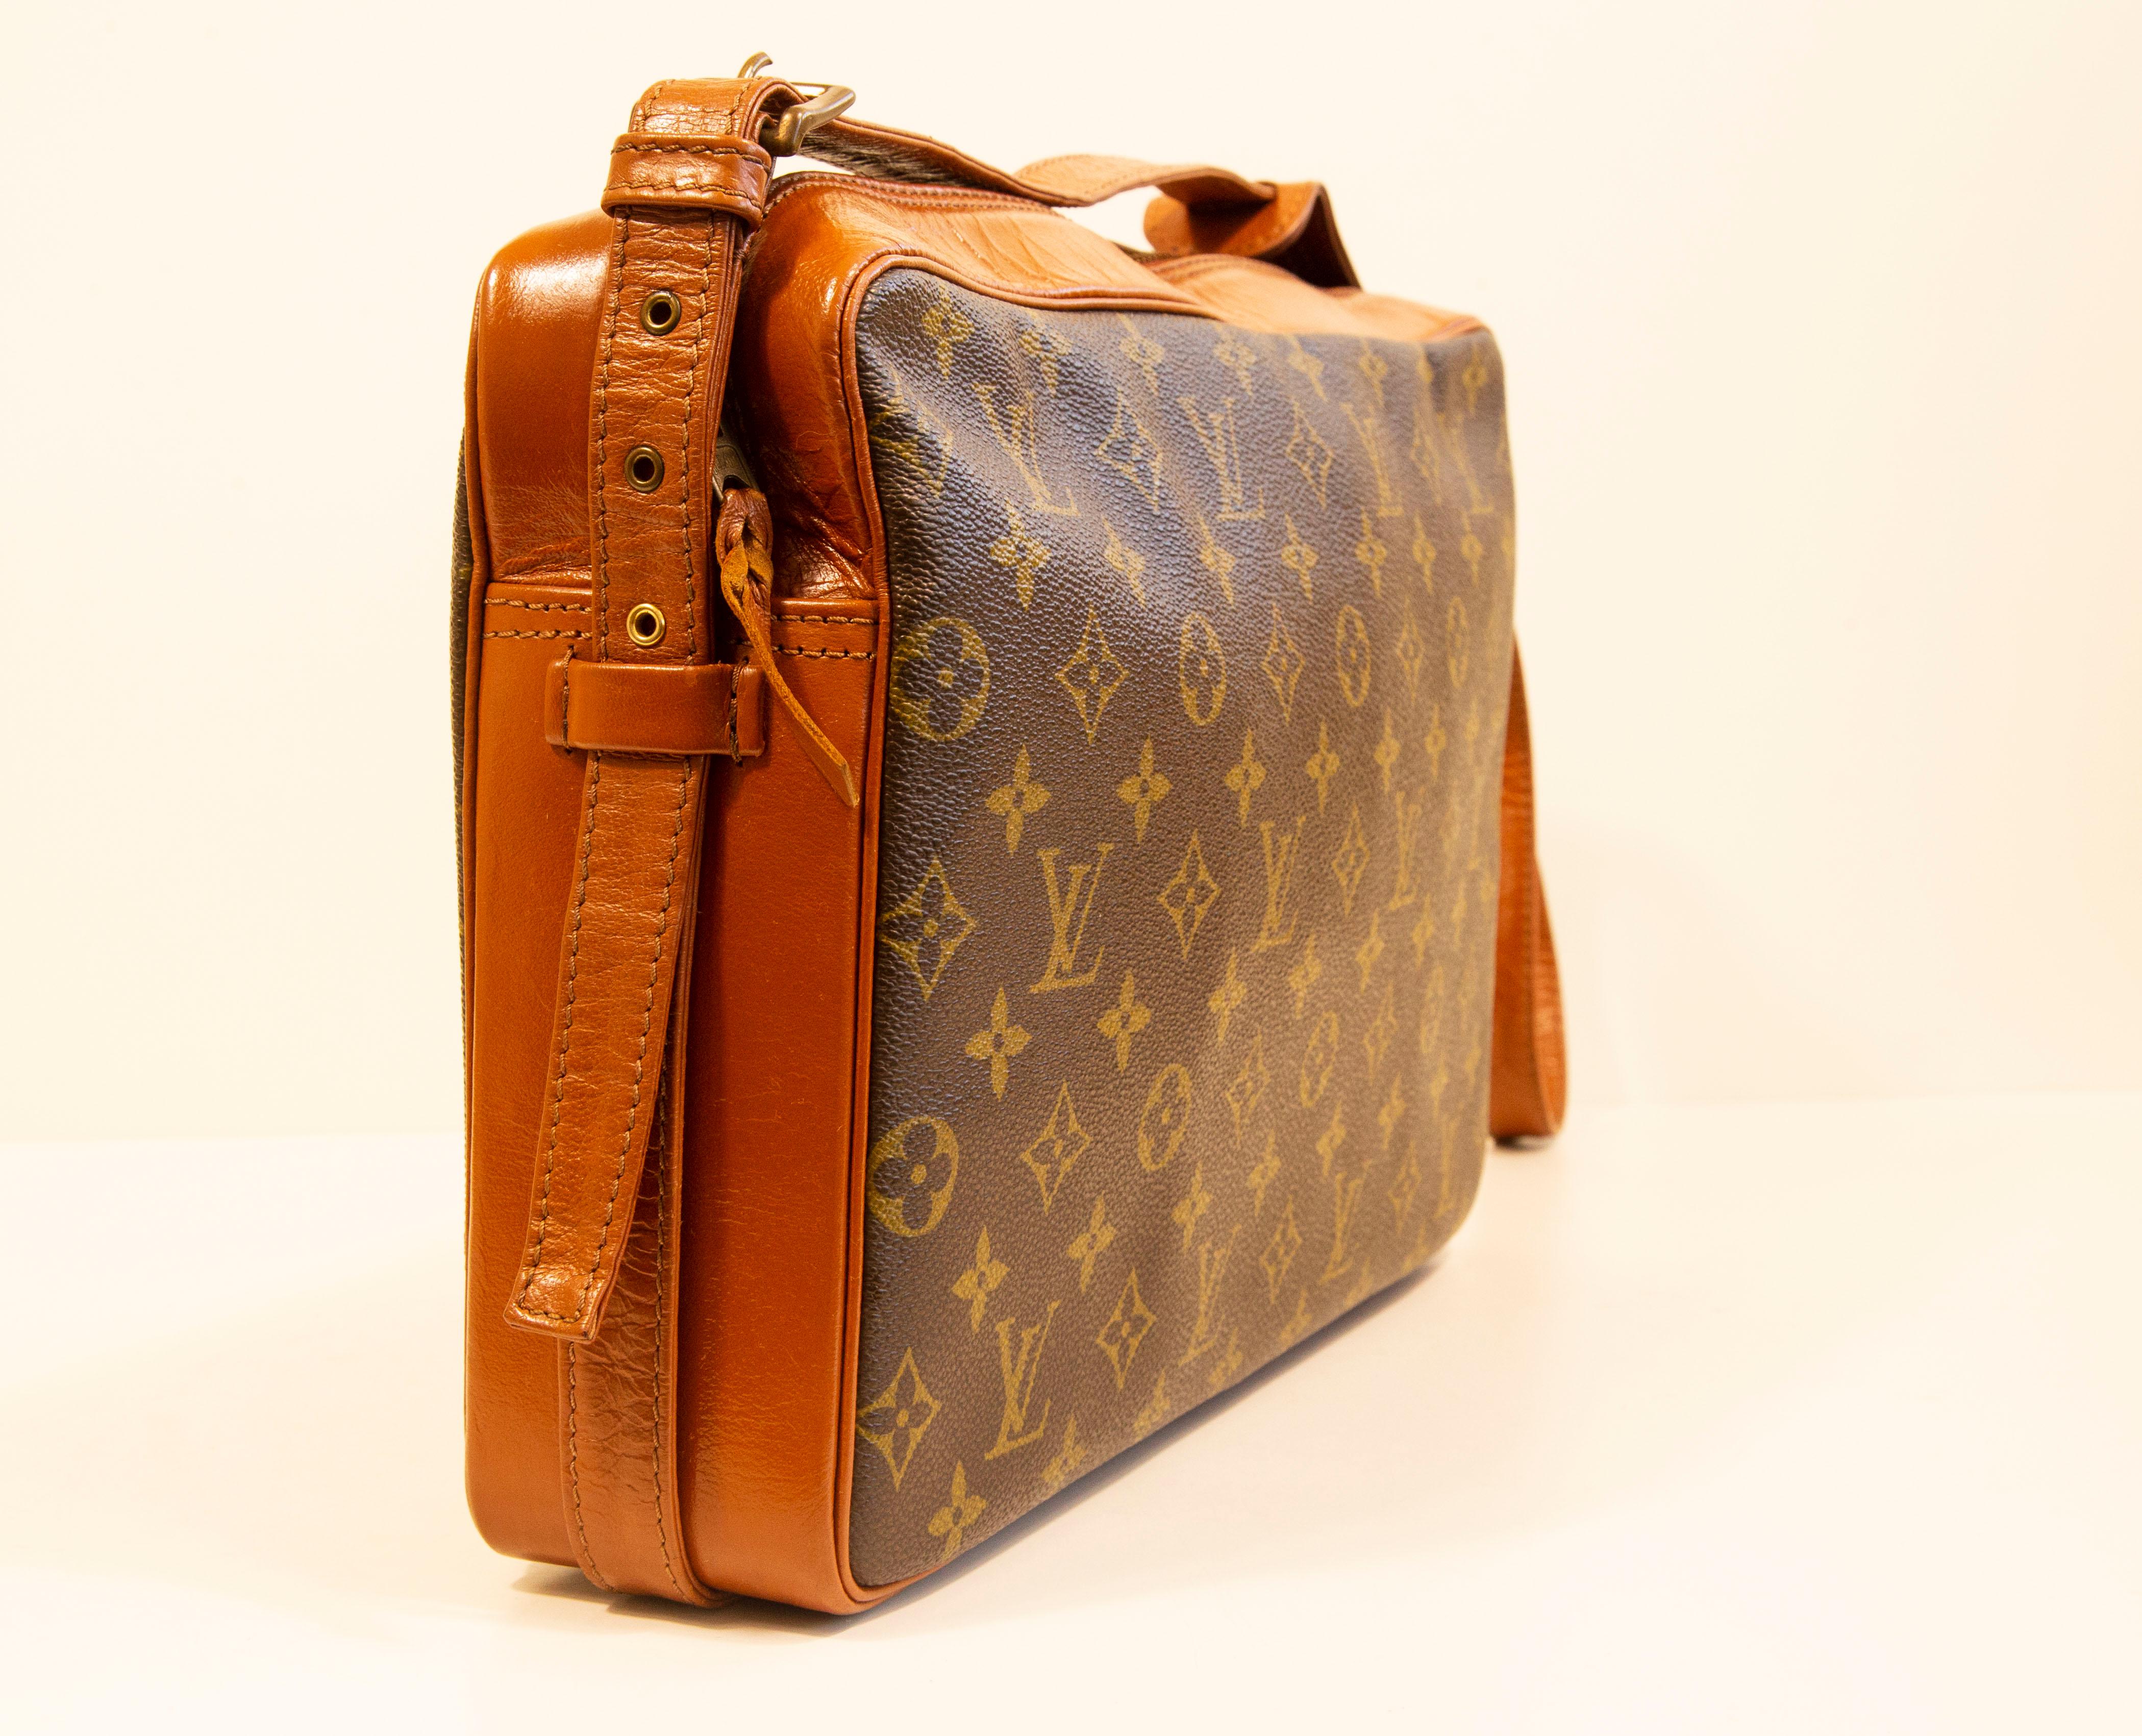 Sac à main vintage Louis Vuitton Monogram Canvas Tuileries. Le sac est fabriqué en toile enduite et en cuir. L'intérieur est entièrement doublé de cuir. L'intérieur se compose d'un compartiment principal et de trois poches latérales, dont l'une est